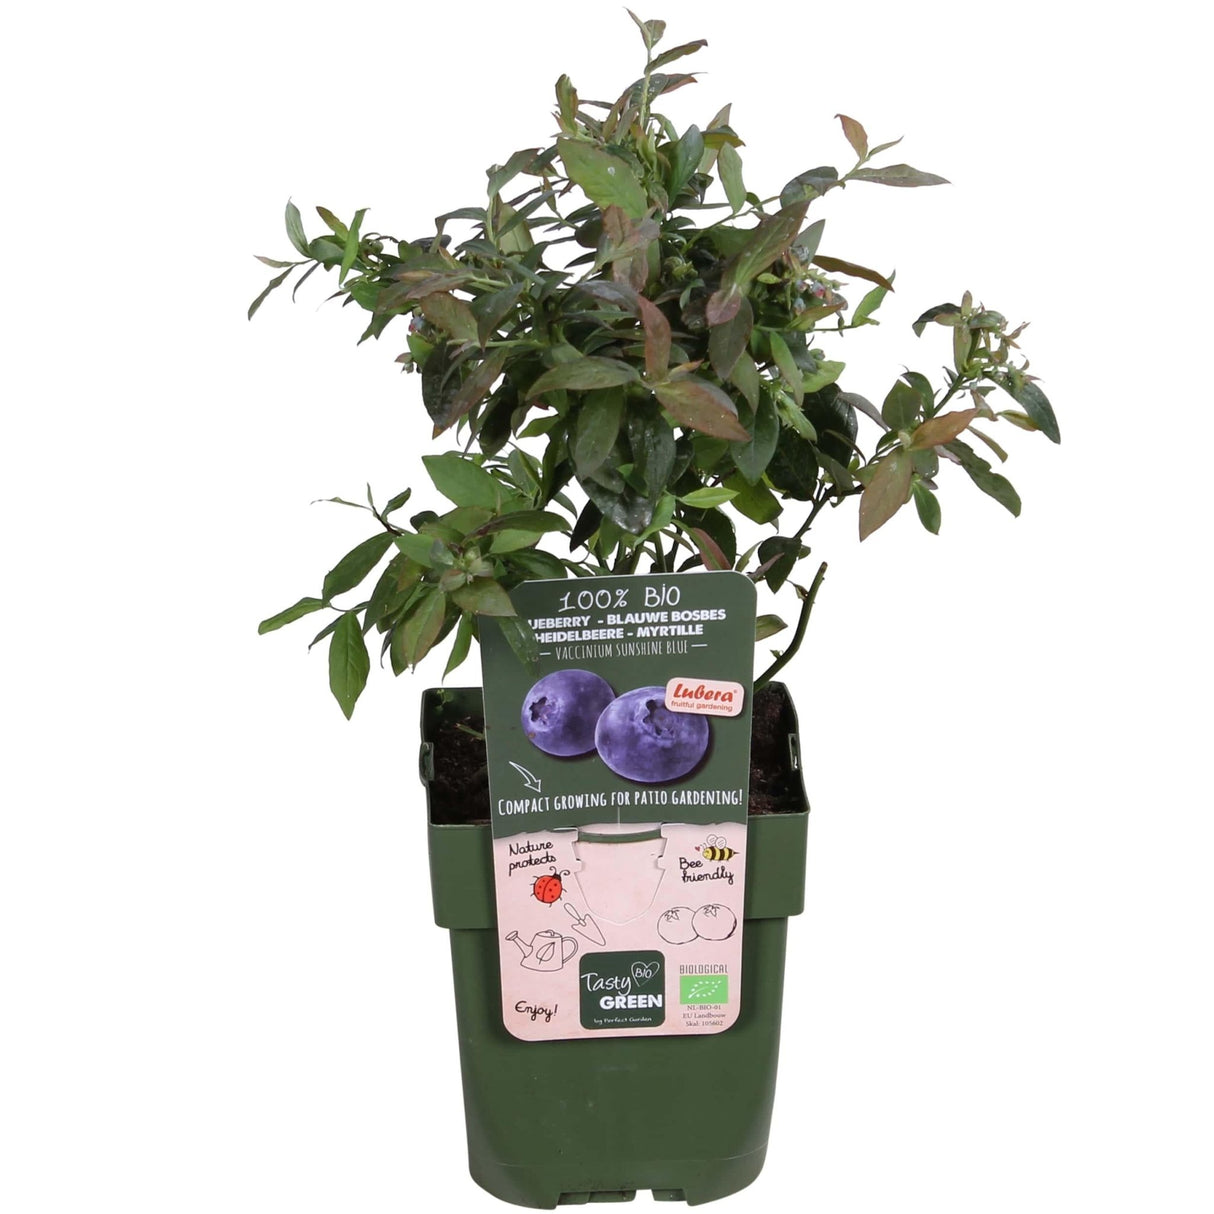 Livraison plante - Myrtillier, blueberry 'Sunshine Blue' - ↨45cm - Ø13 - arbuste fruitier